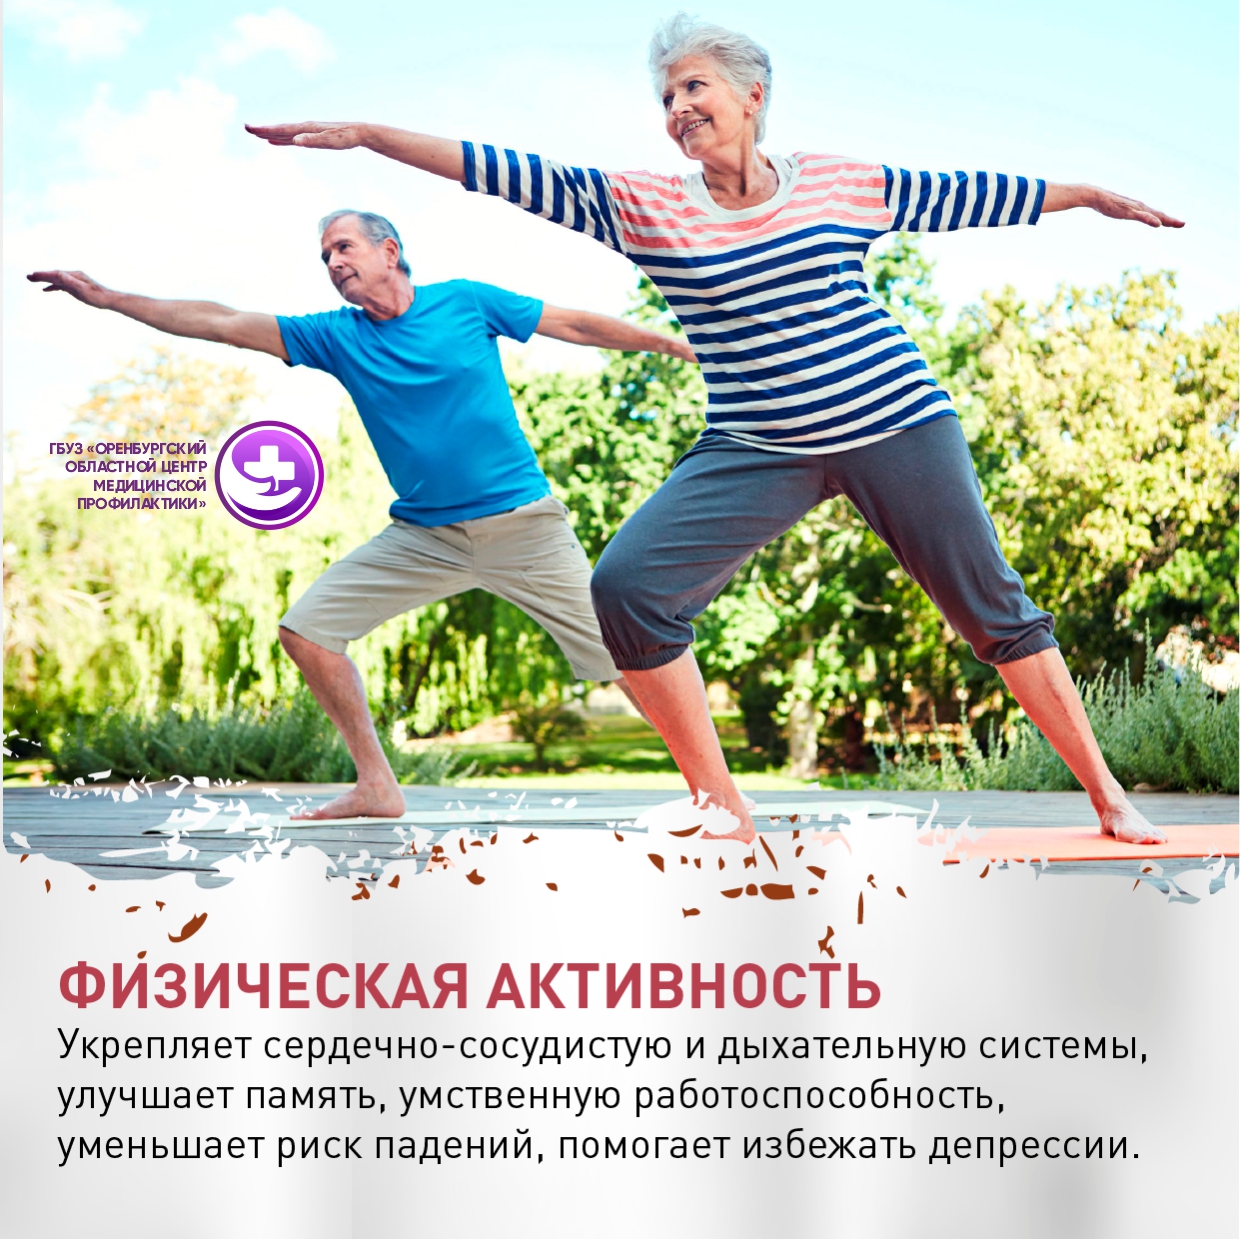 Значение физической активности для здоровья пожилых людей